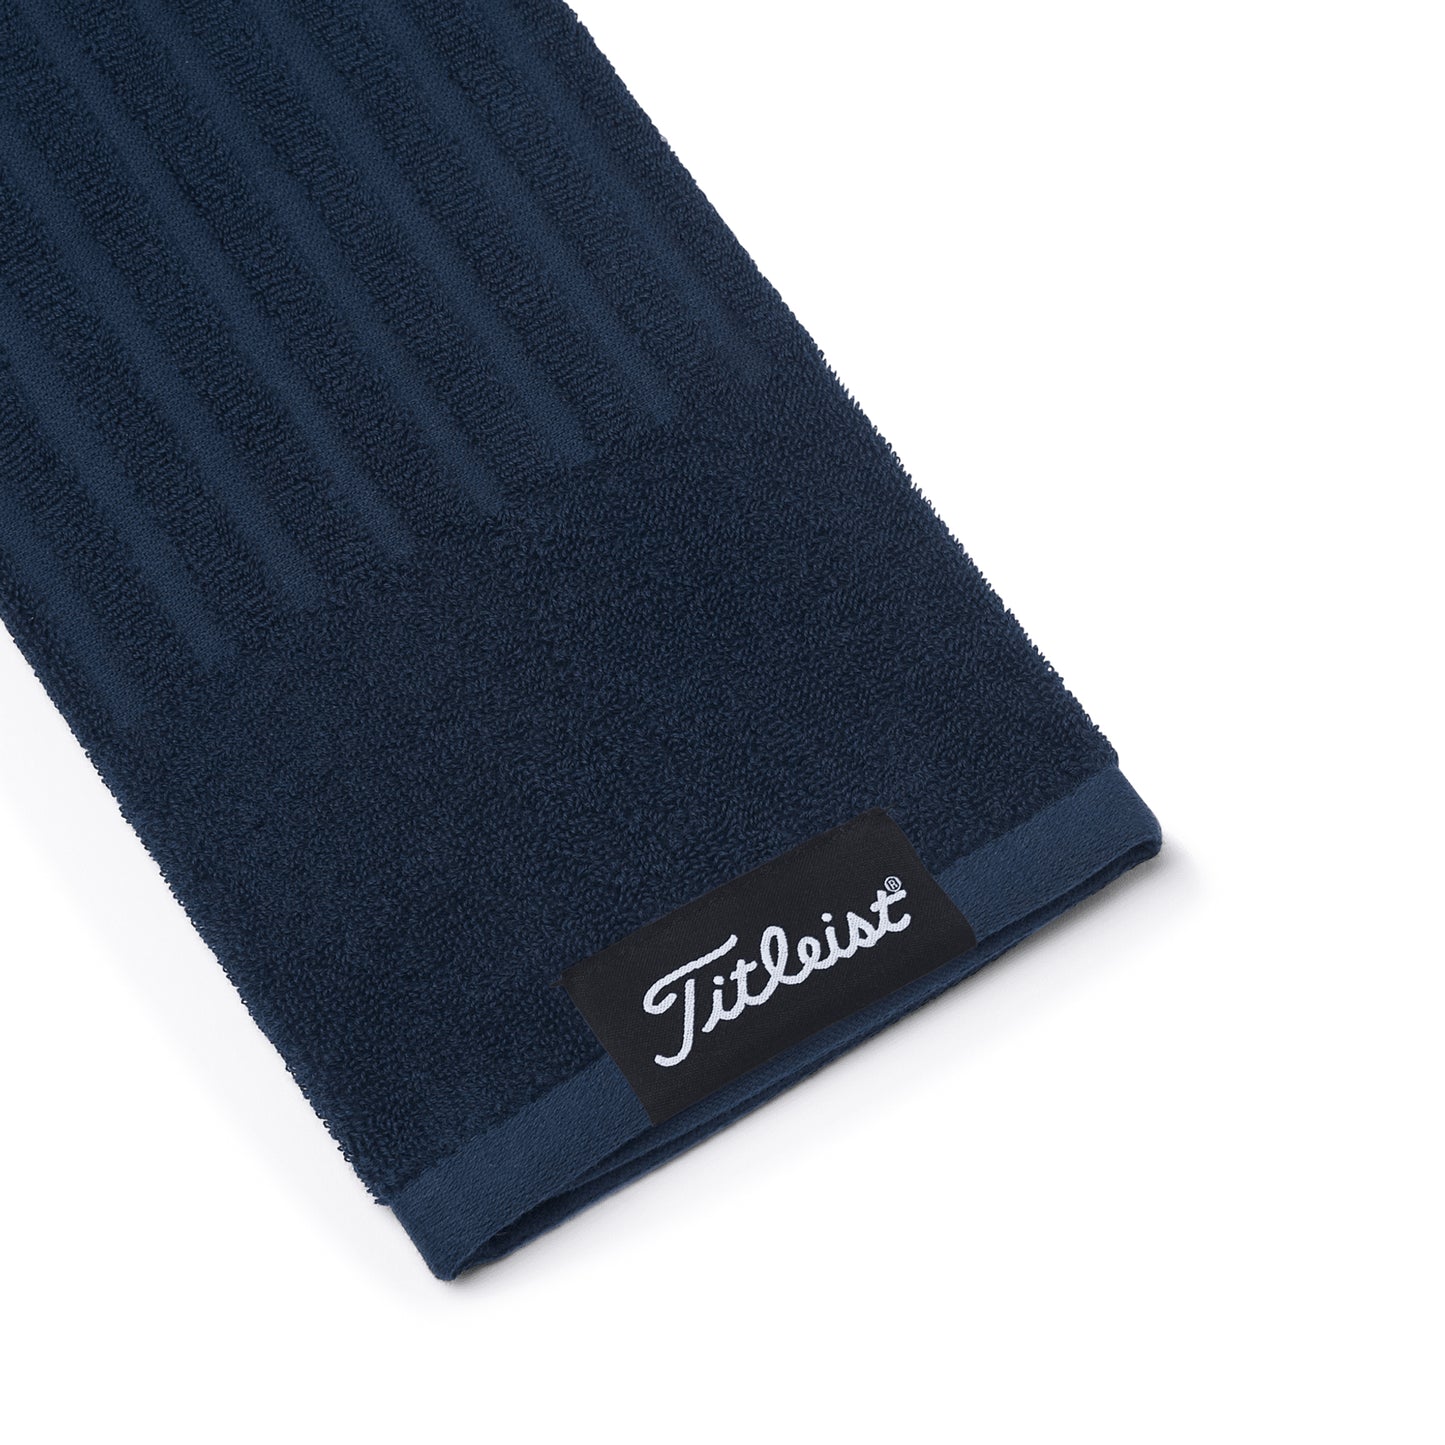 Serviette de golf Tri-fold pour sac de golf Titleist  bleu marine